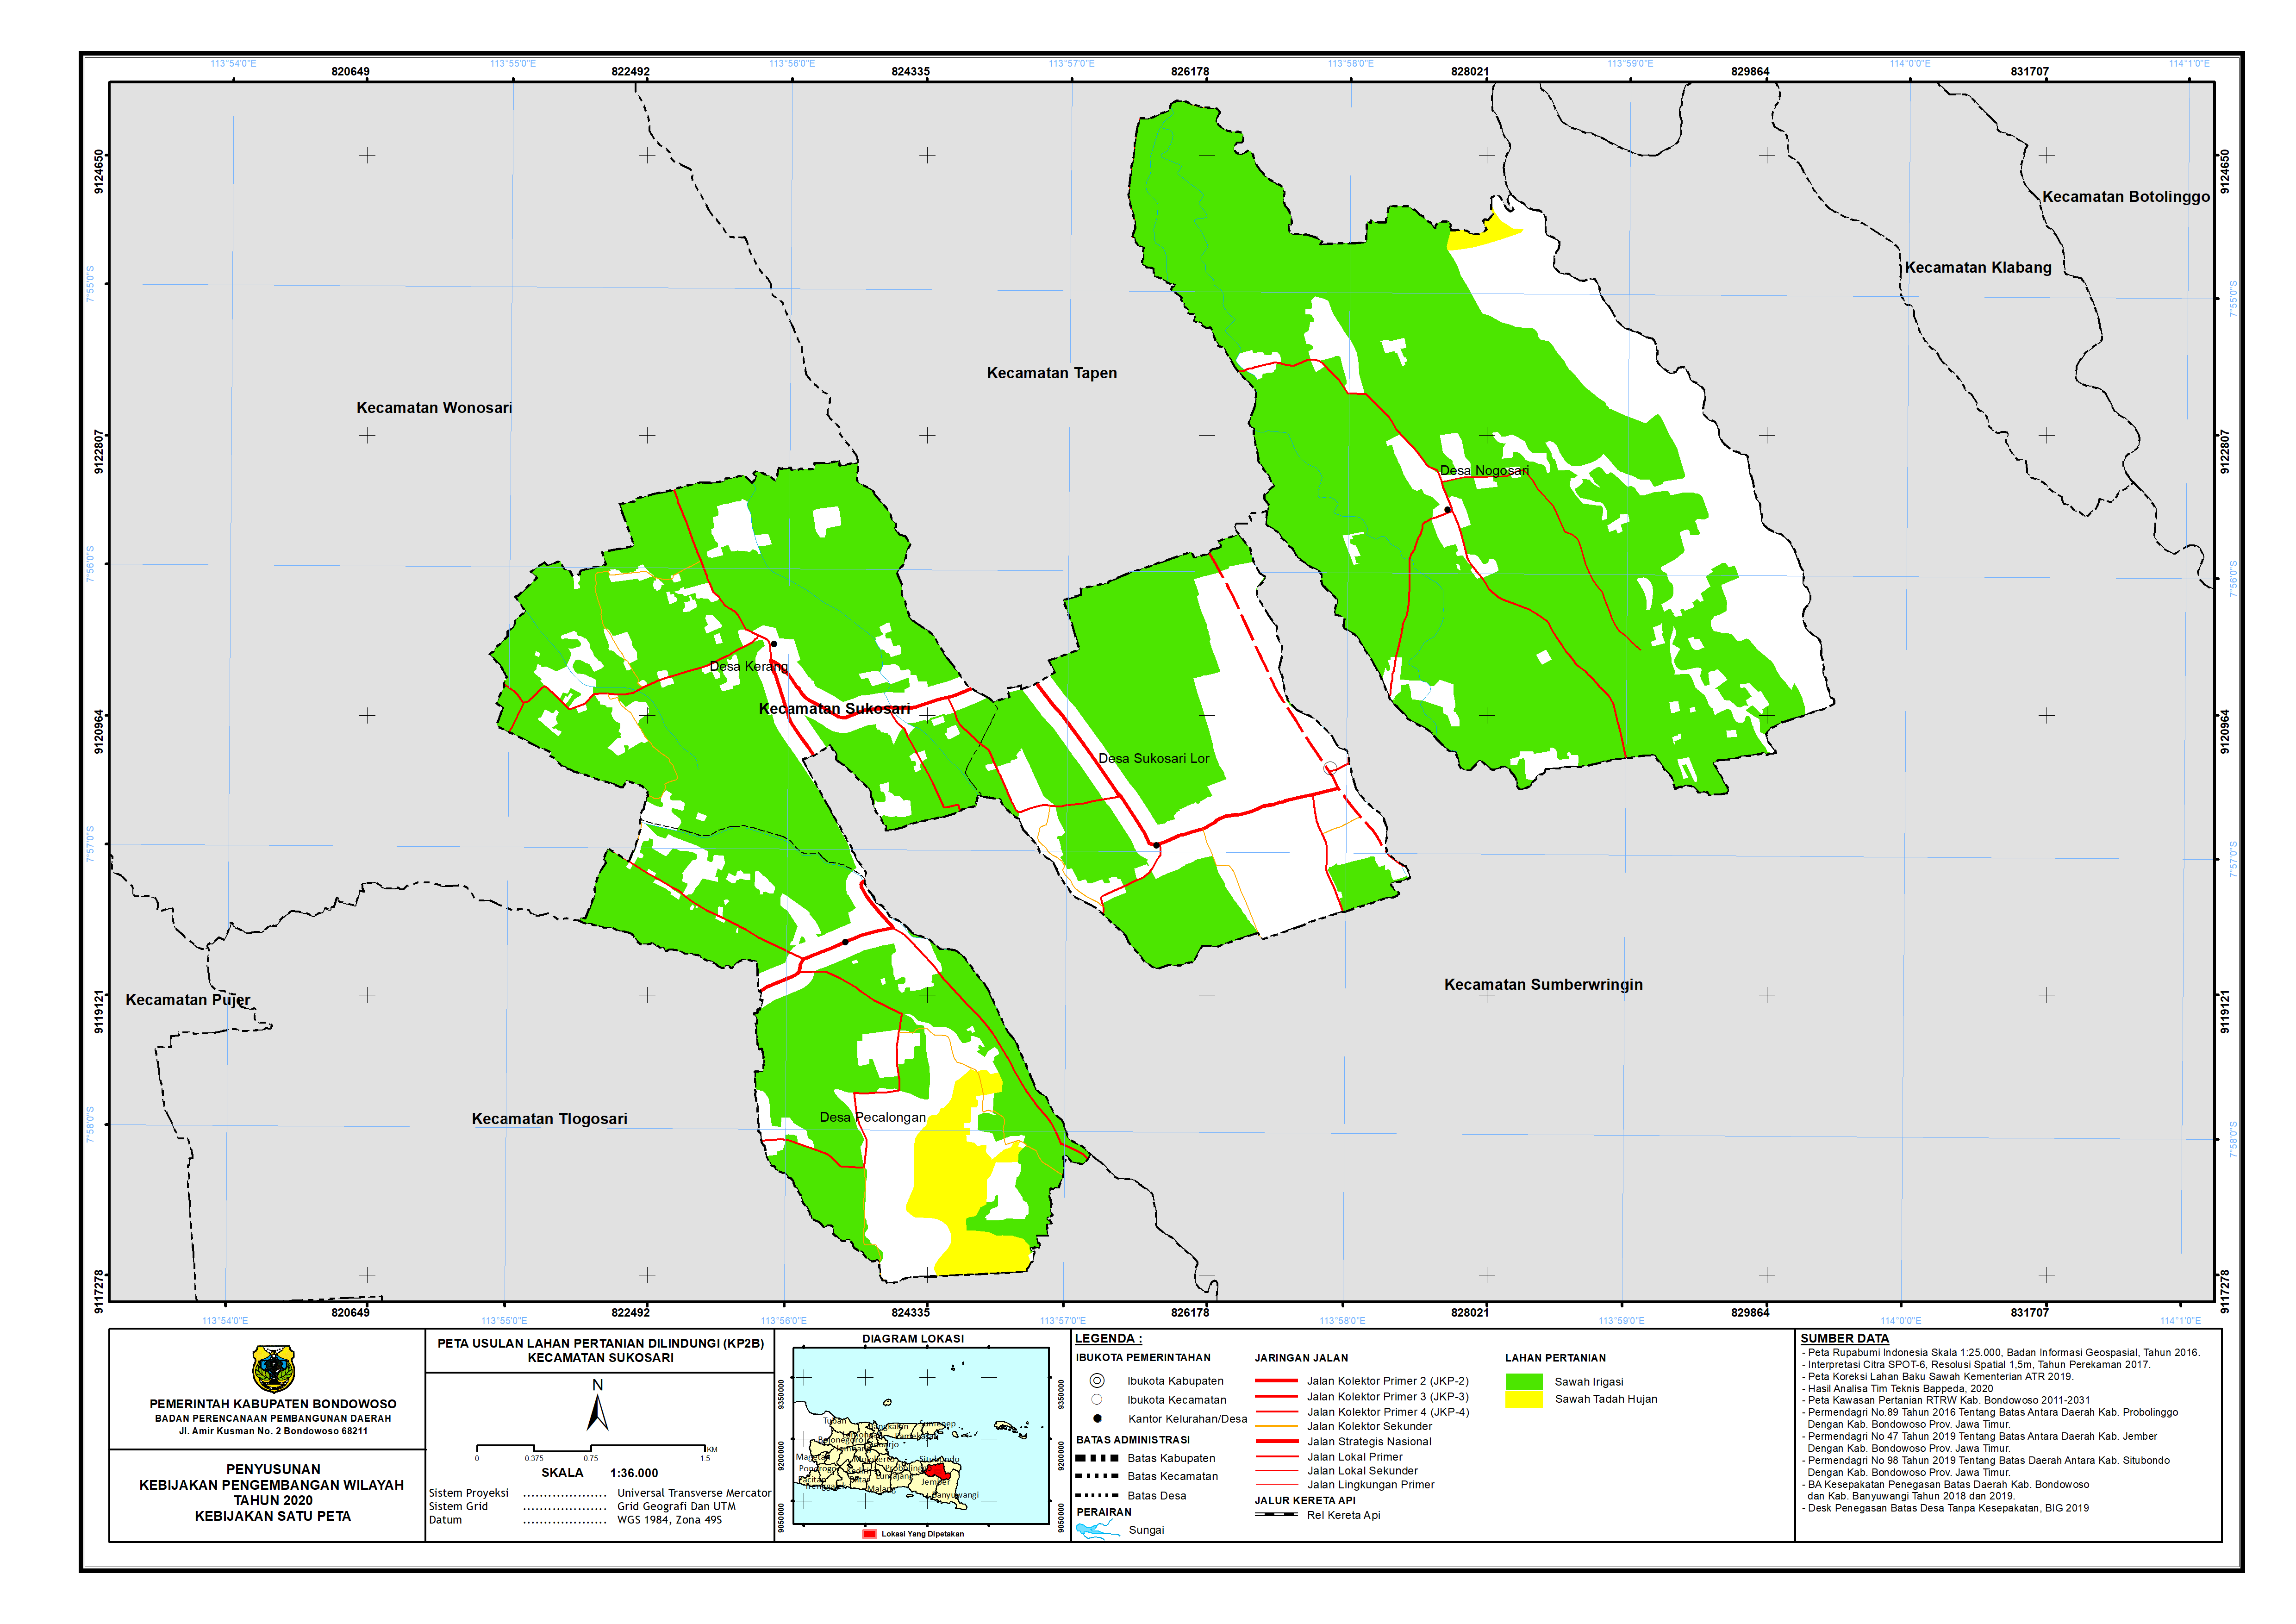 Peta Usulan Lahan Pertanian  Dilindungi Kecamatan Sukosari.png